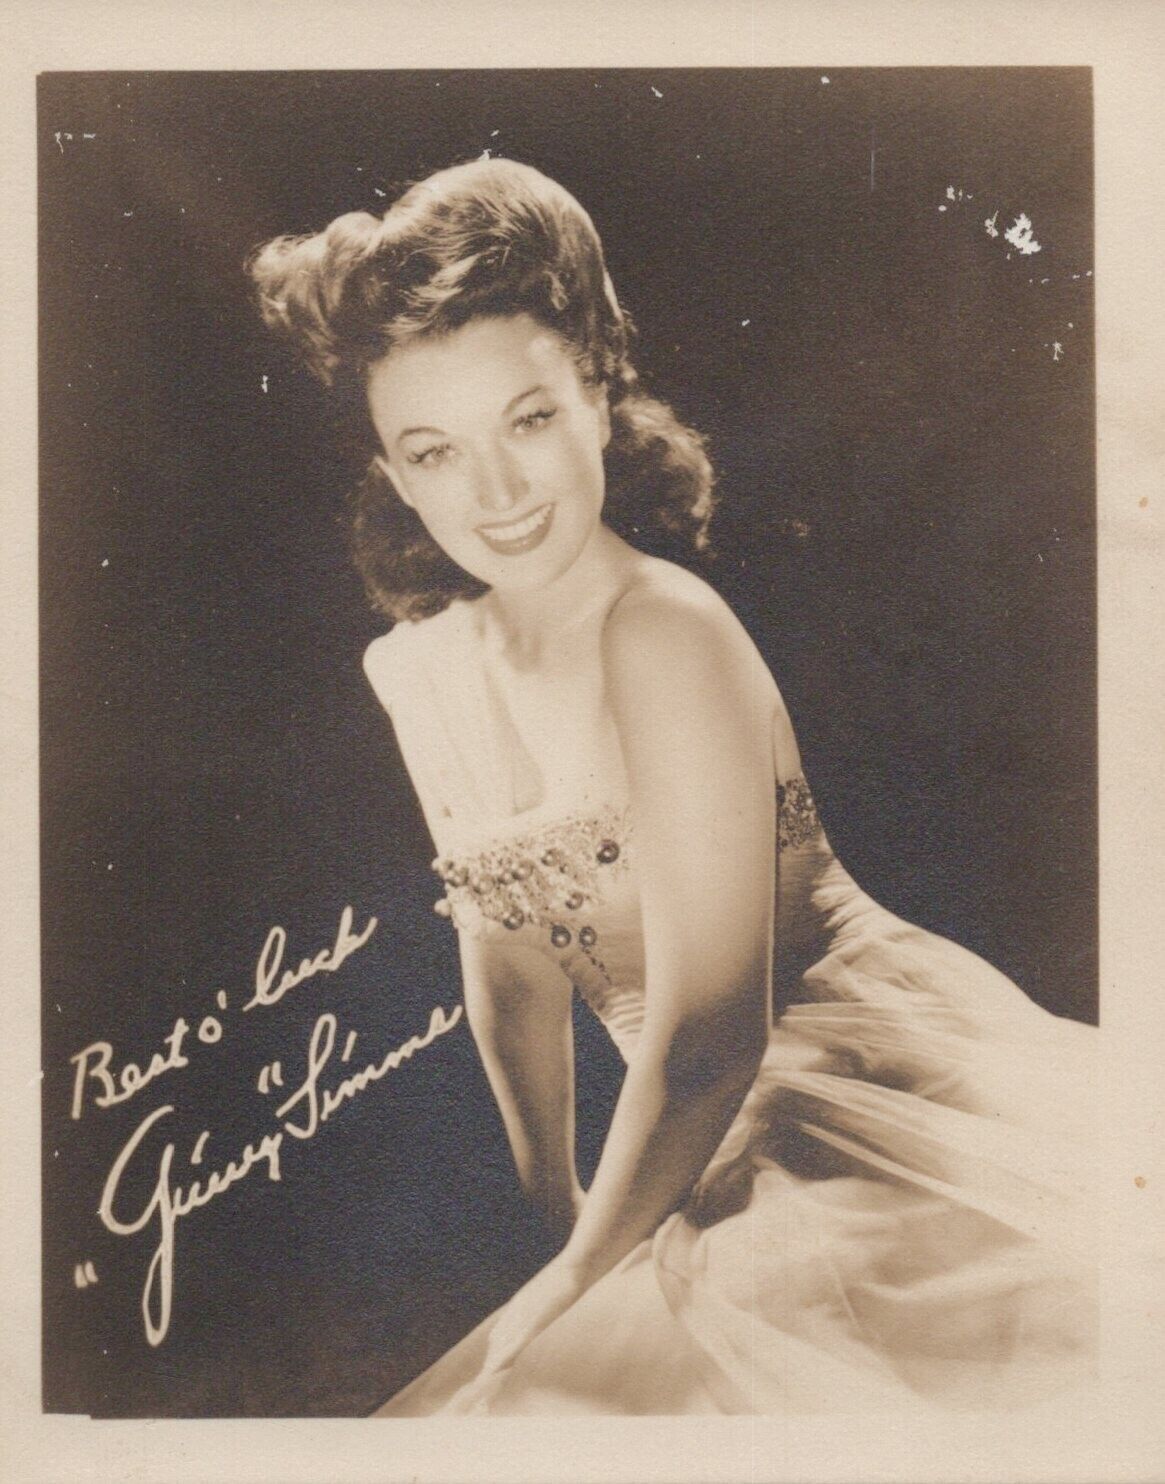 Ginny Simms (1930s) ❤ Original Vintage Stylish Glamorous Iconic Photo K 360